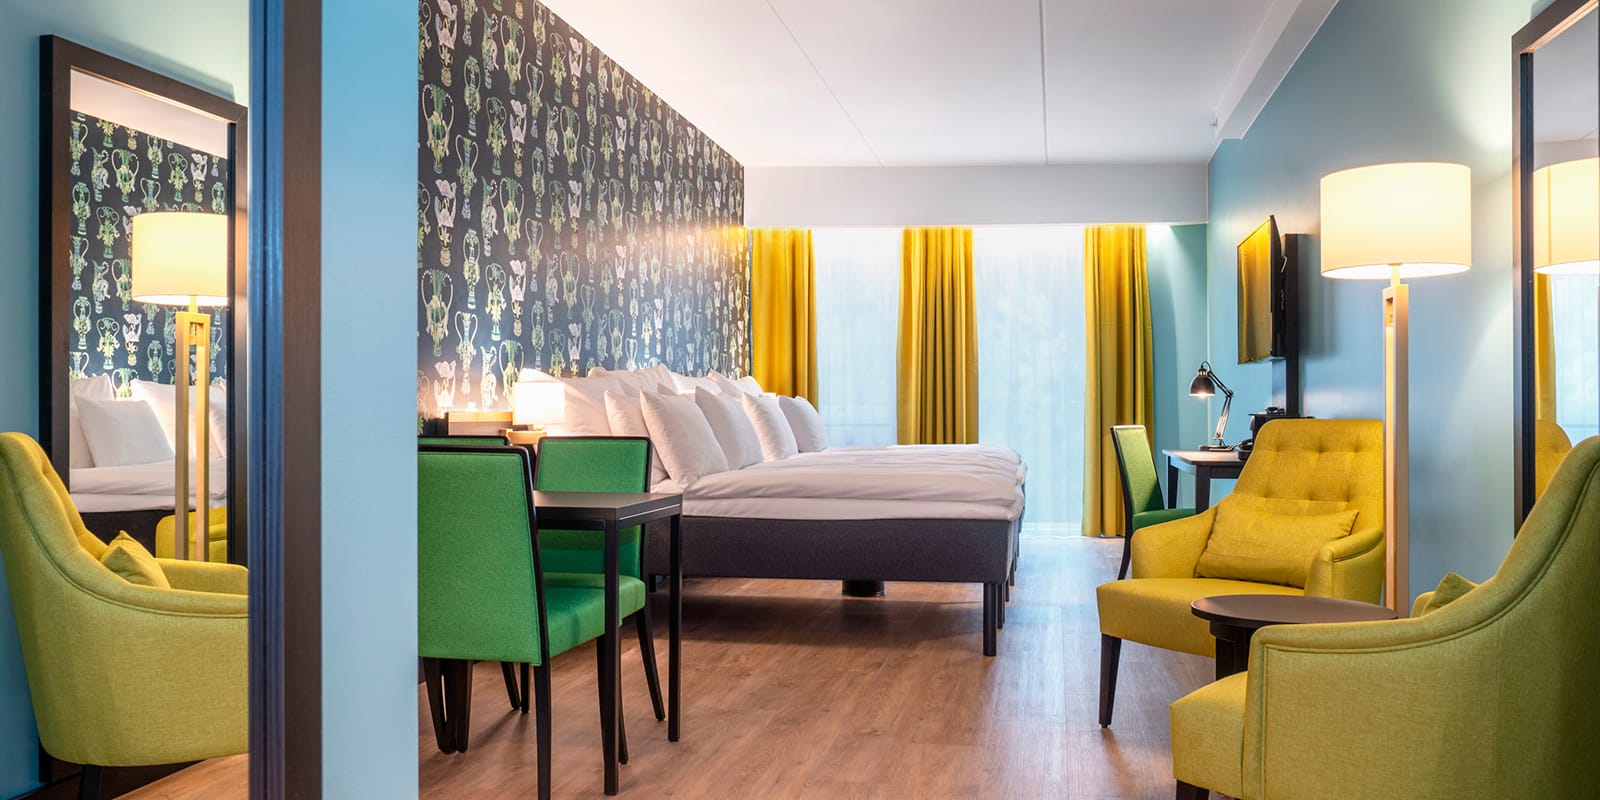 Stor seng, sittegruppe og spisebord i junior suite på Thon Hotel Linne i Oslo